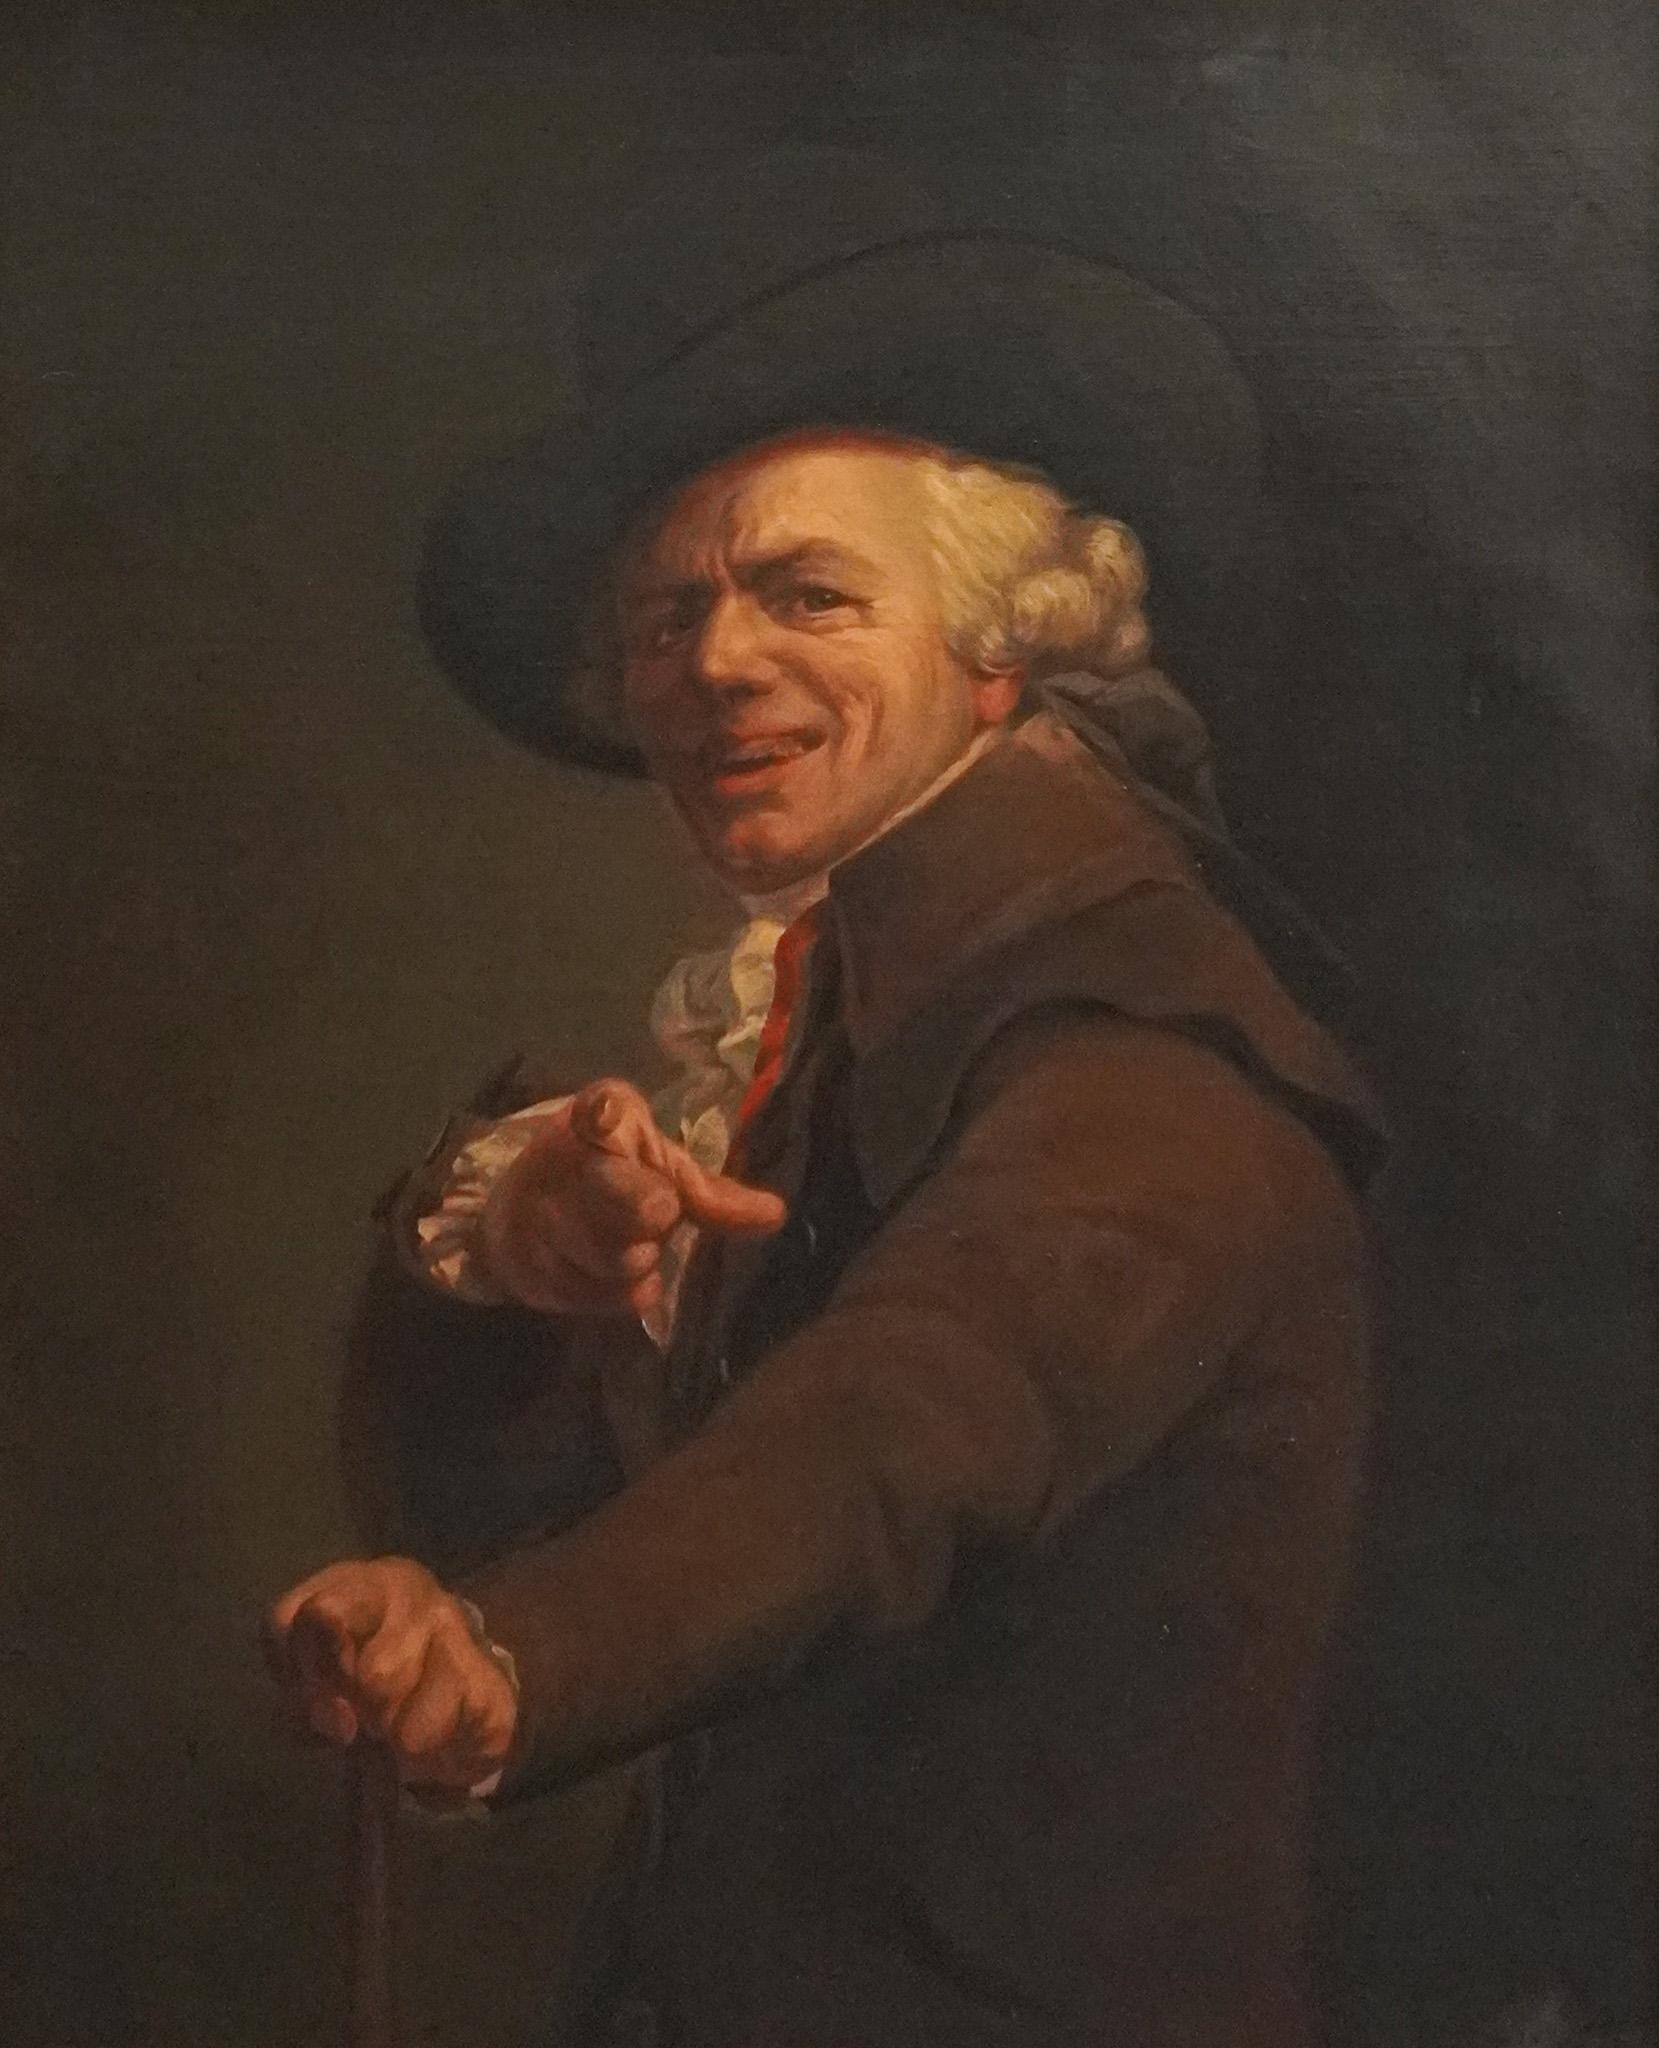 Artwork by Joseph Ducreux, Portrait de l'artiste sous les traits de'un moqueur (Self-Portrait in the Guise of a Mockingbird), Made of Oil on Canvas